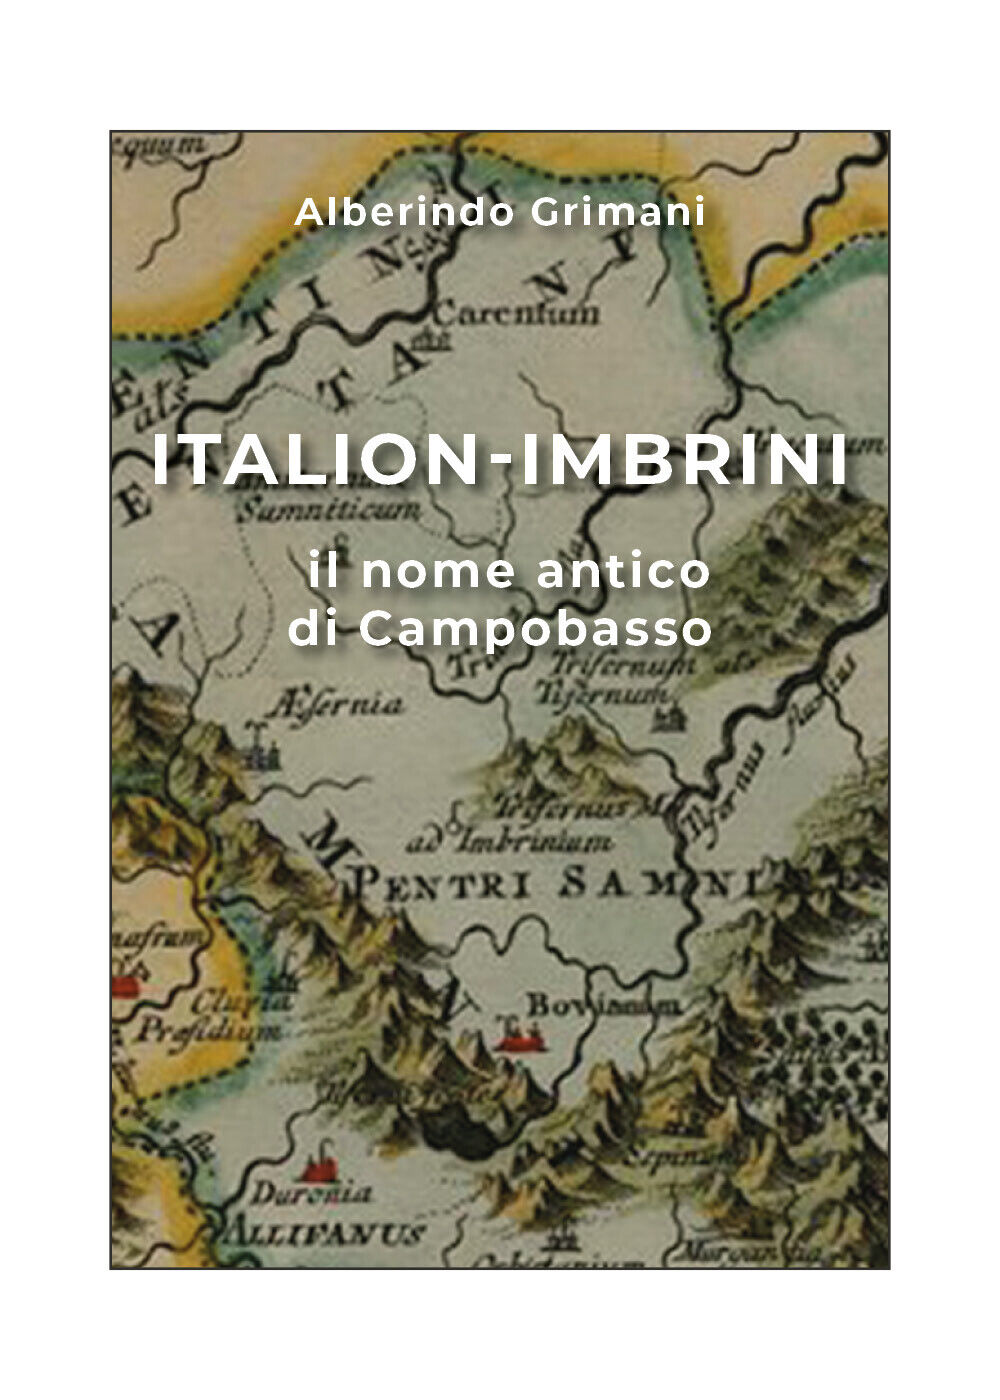 Italion-Imbrini il nome antico di Campobasso  di Alberindo Grimani,  2019,  Youc